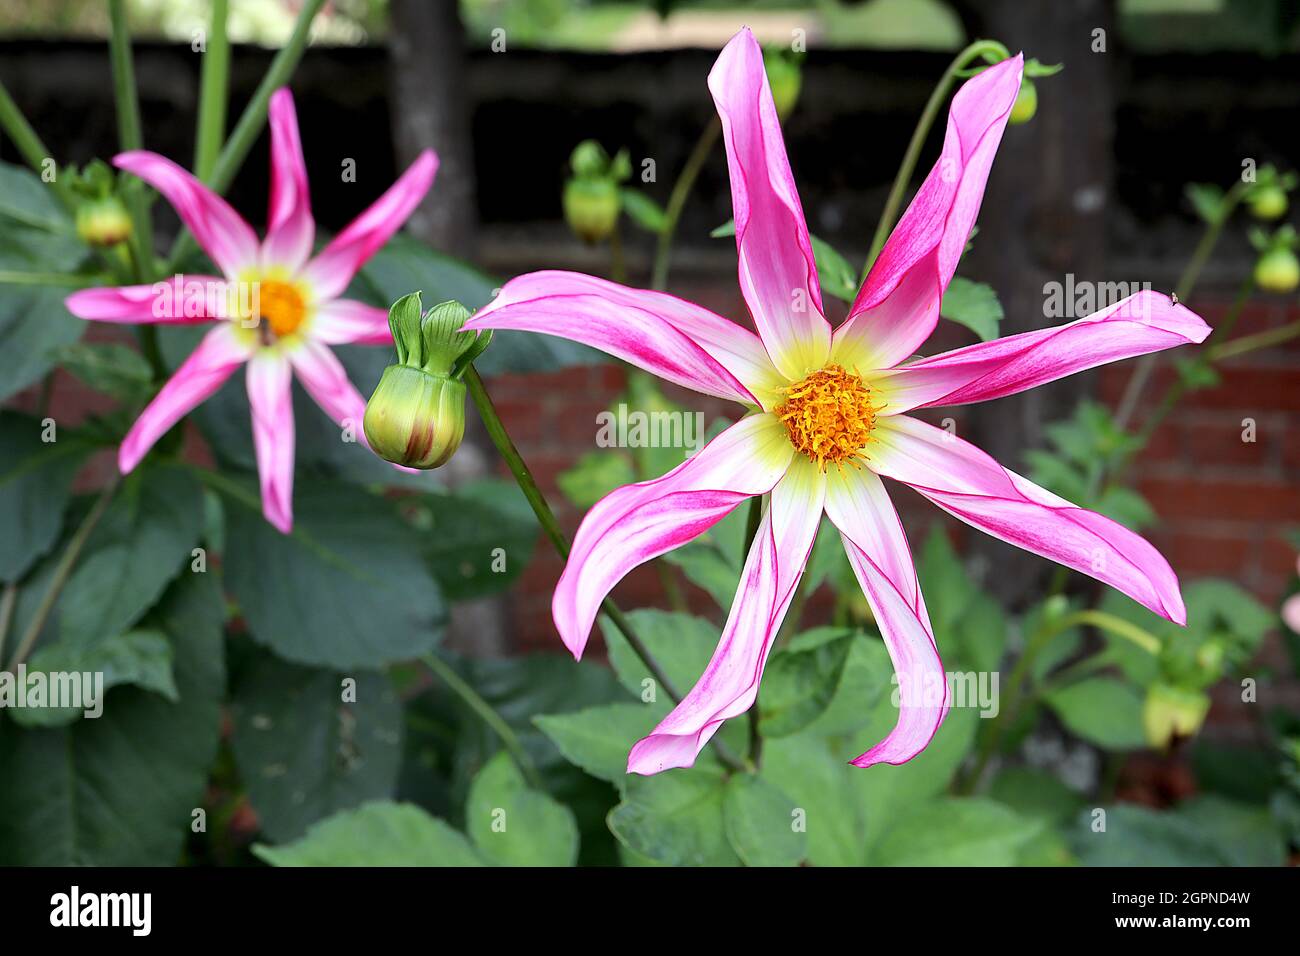 Dahlia ‘Honka Pink’ Star Dahlia Group 12 sternförmige, tiefrosa Blüten mit weißem Zentrum und gelbem Halo, gerollte Blütenblätter, September, England, Großbritannien Stockfoto